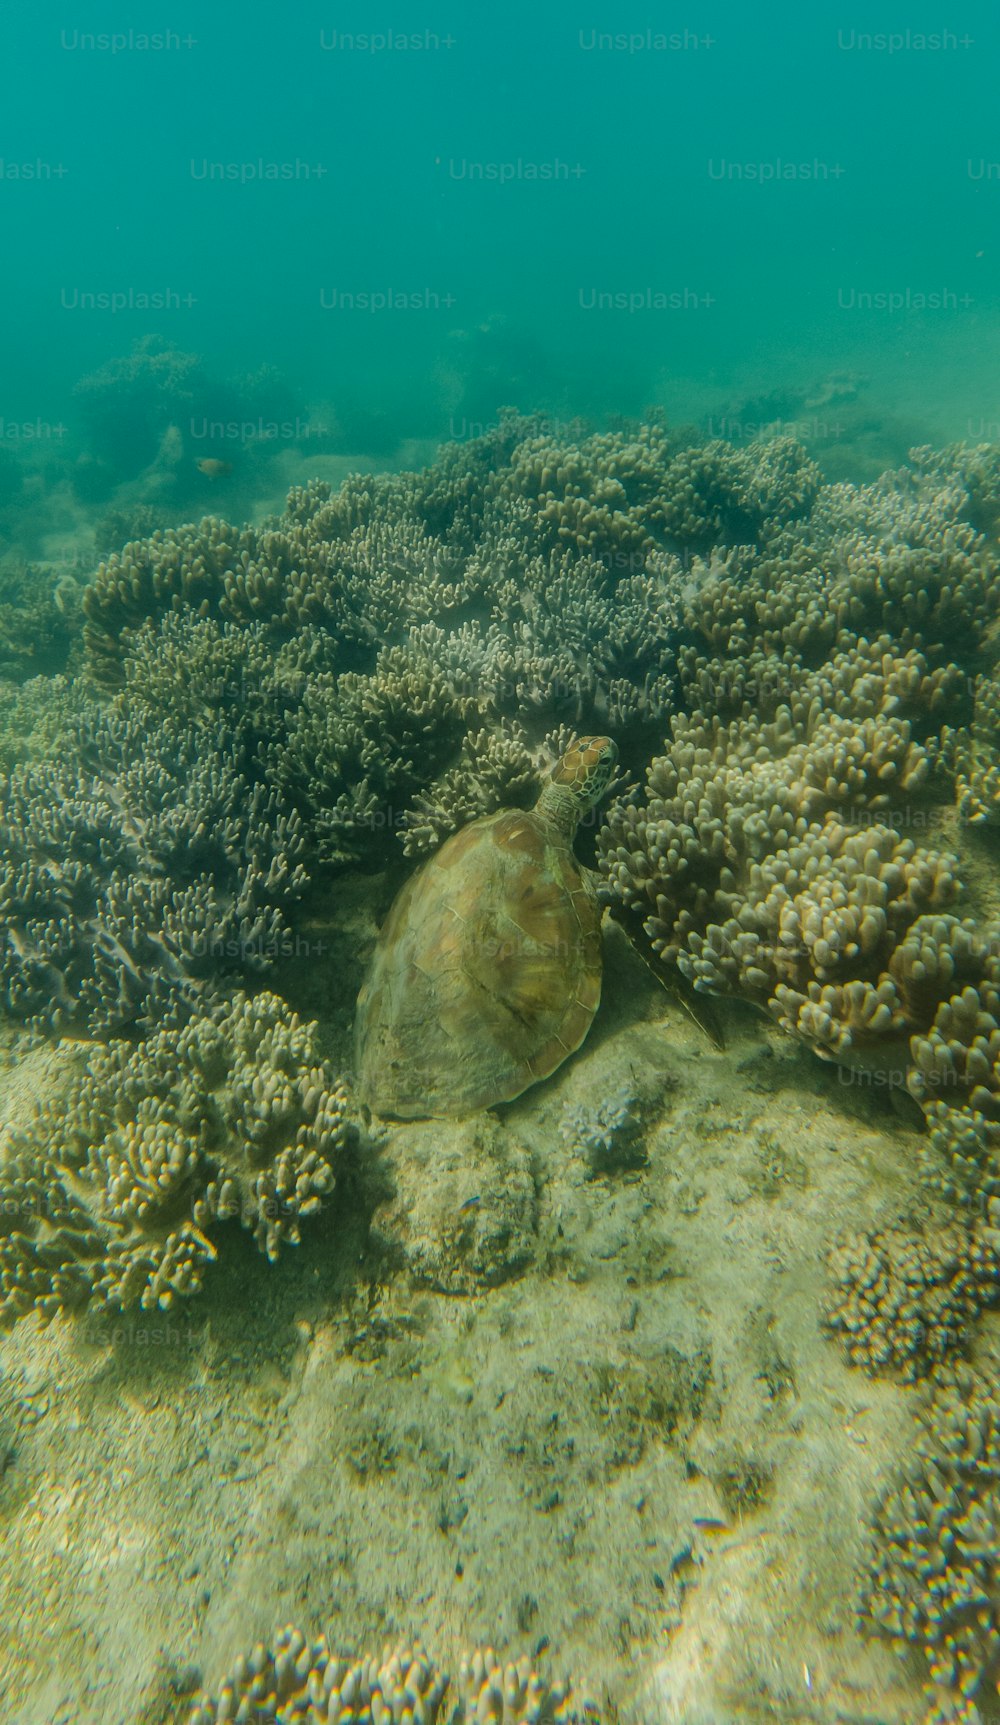 Une tortue nageant dans l’océan